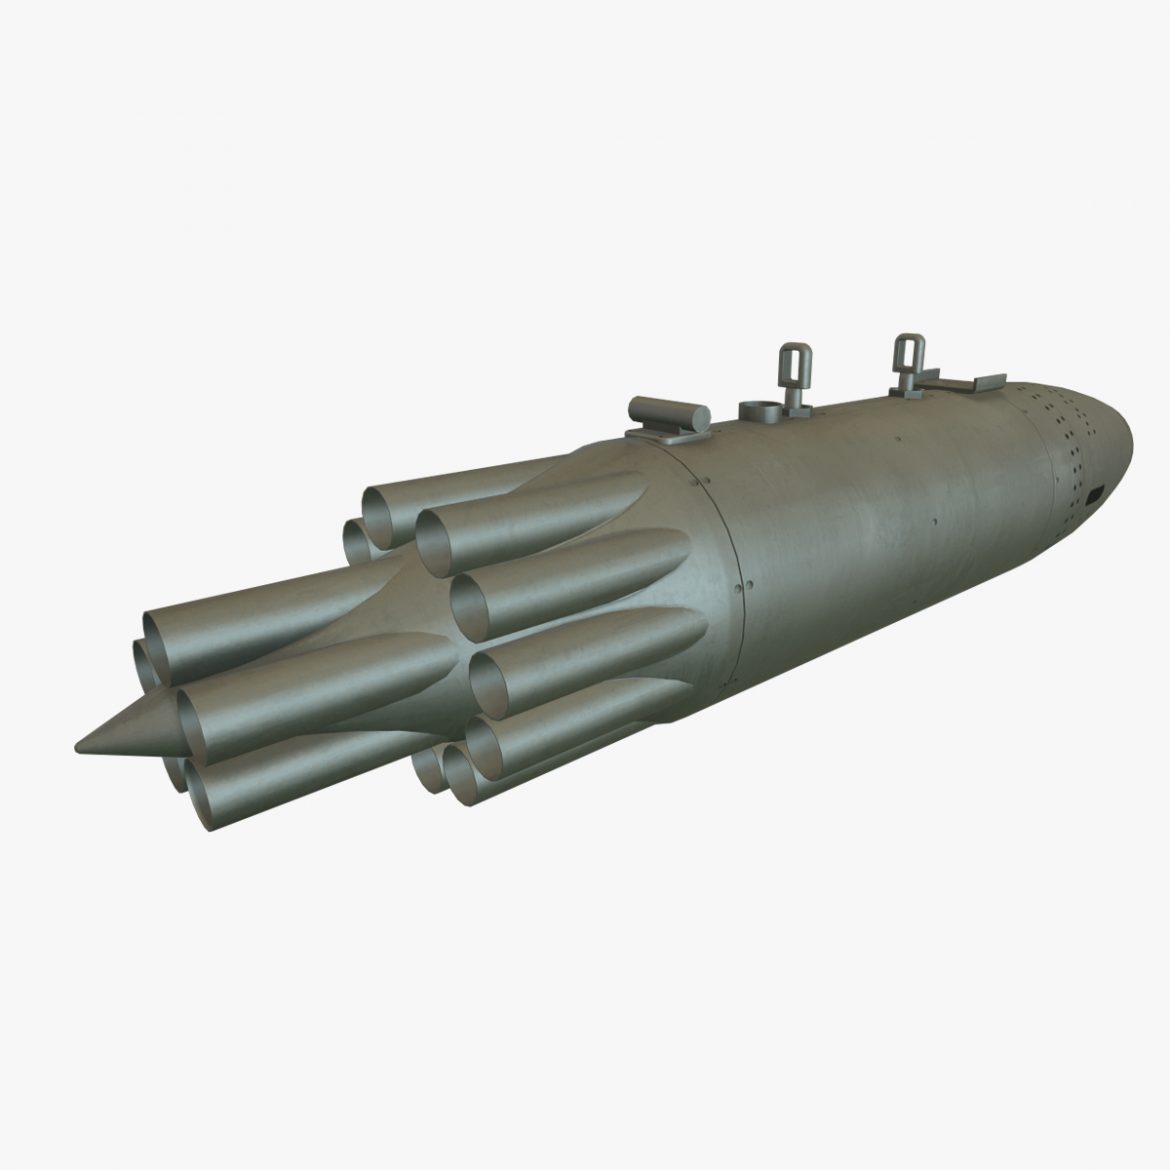 rocket launcher ub-16-57kv 3d model 3ds max fbx obj 302697